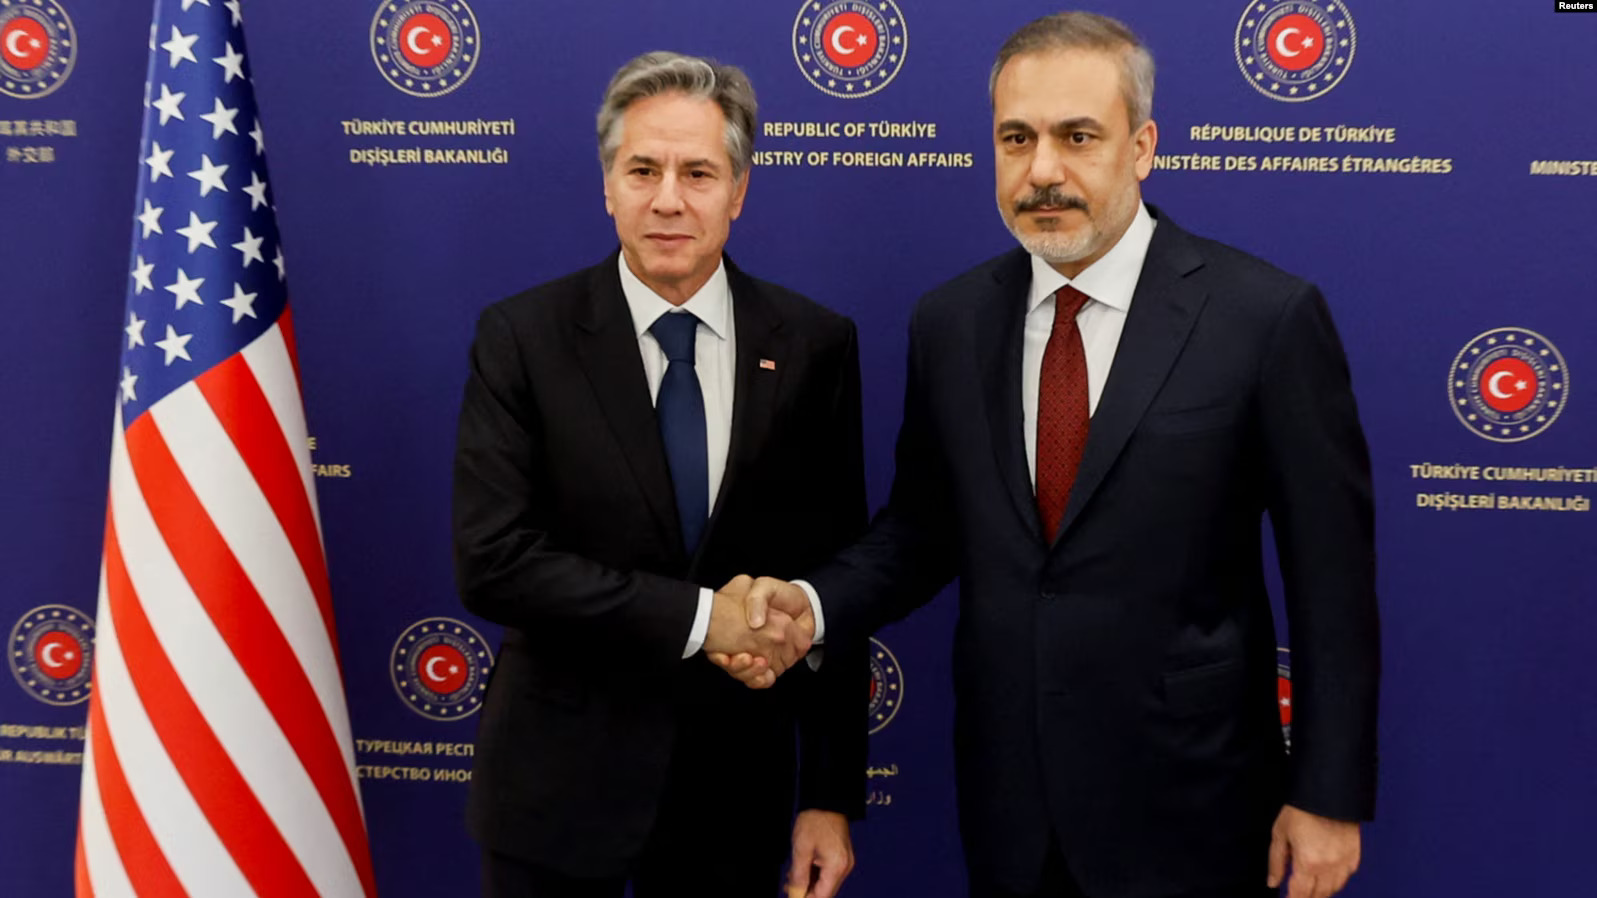 Reuters. ԱՄՆ-ը և Թուրքիան հարաբերությունների բարելավման համապարփակ բանակցություններ են նախաձեռնում